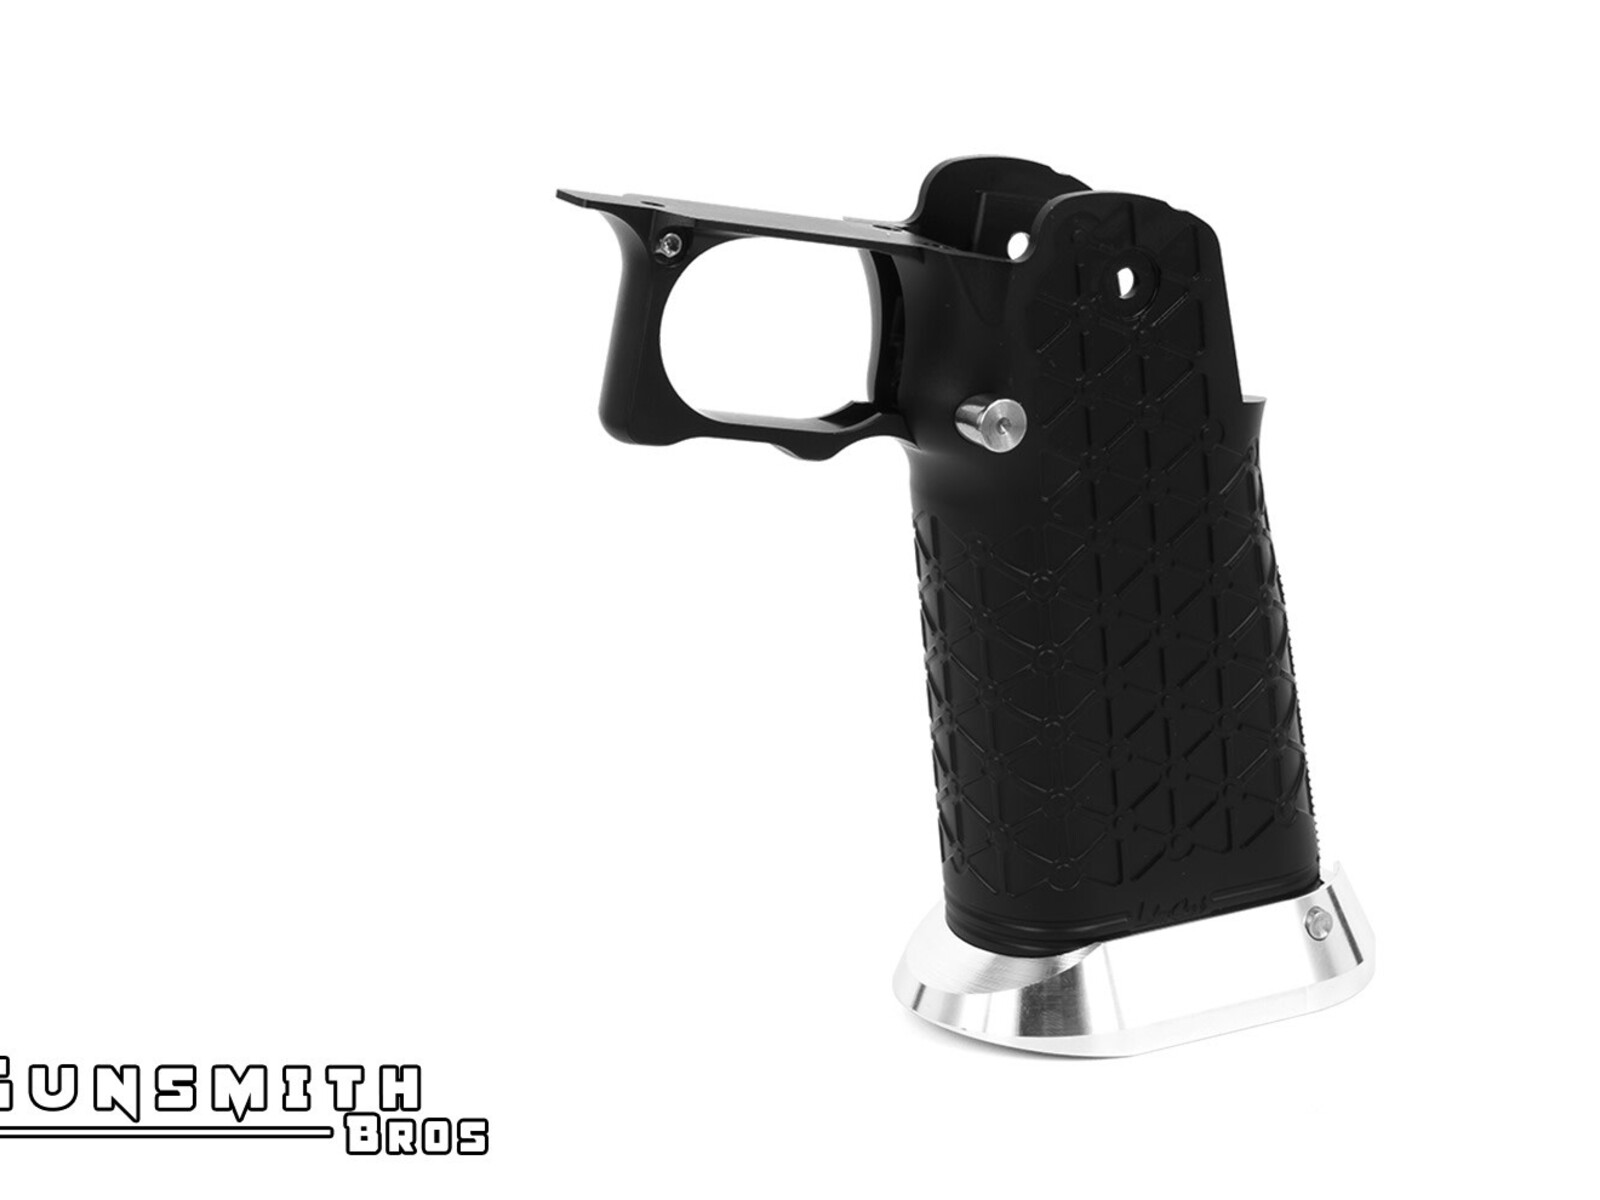 Gunsmith Bros Gunsmith Bros Aluminum Grip for Hi-CAPA Type 01 (LimCat)